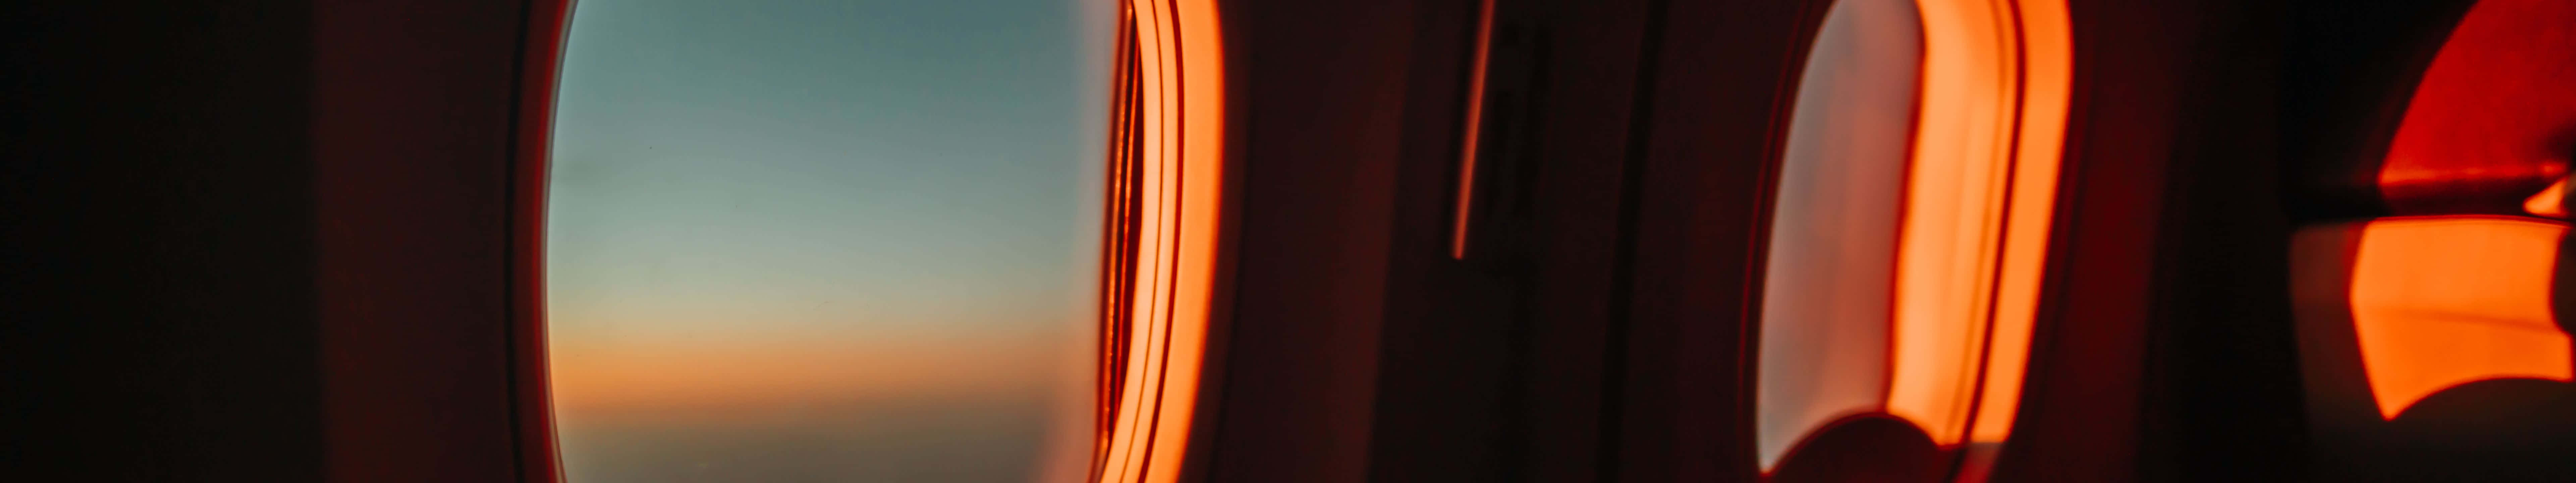 Einfenster In Einem Flugzeug Wallpaper